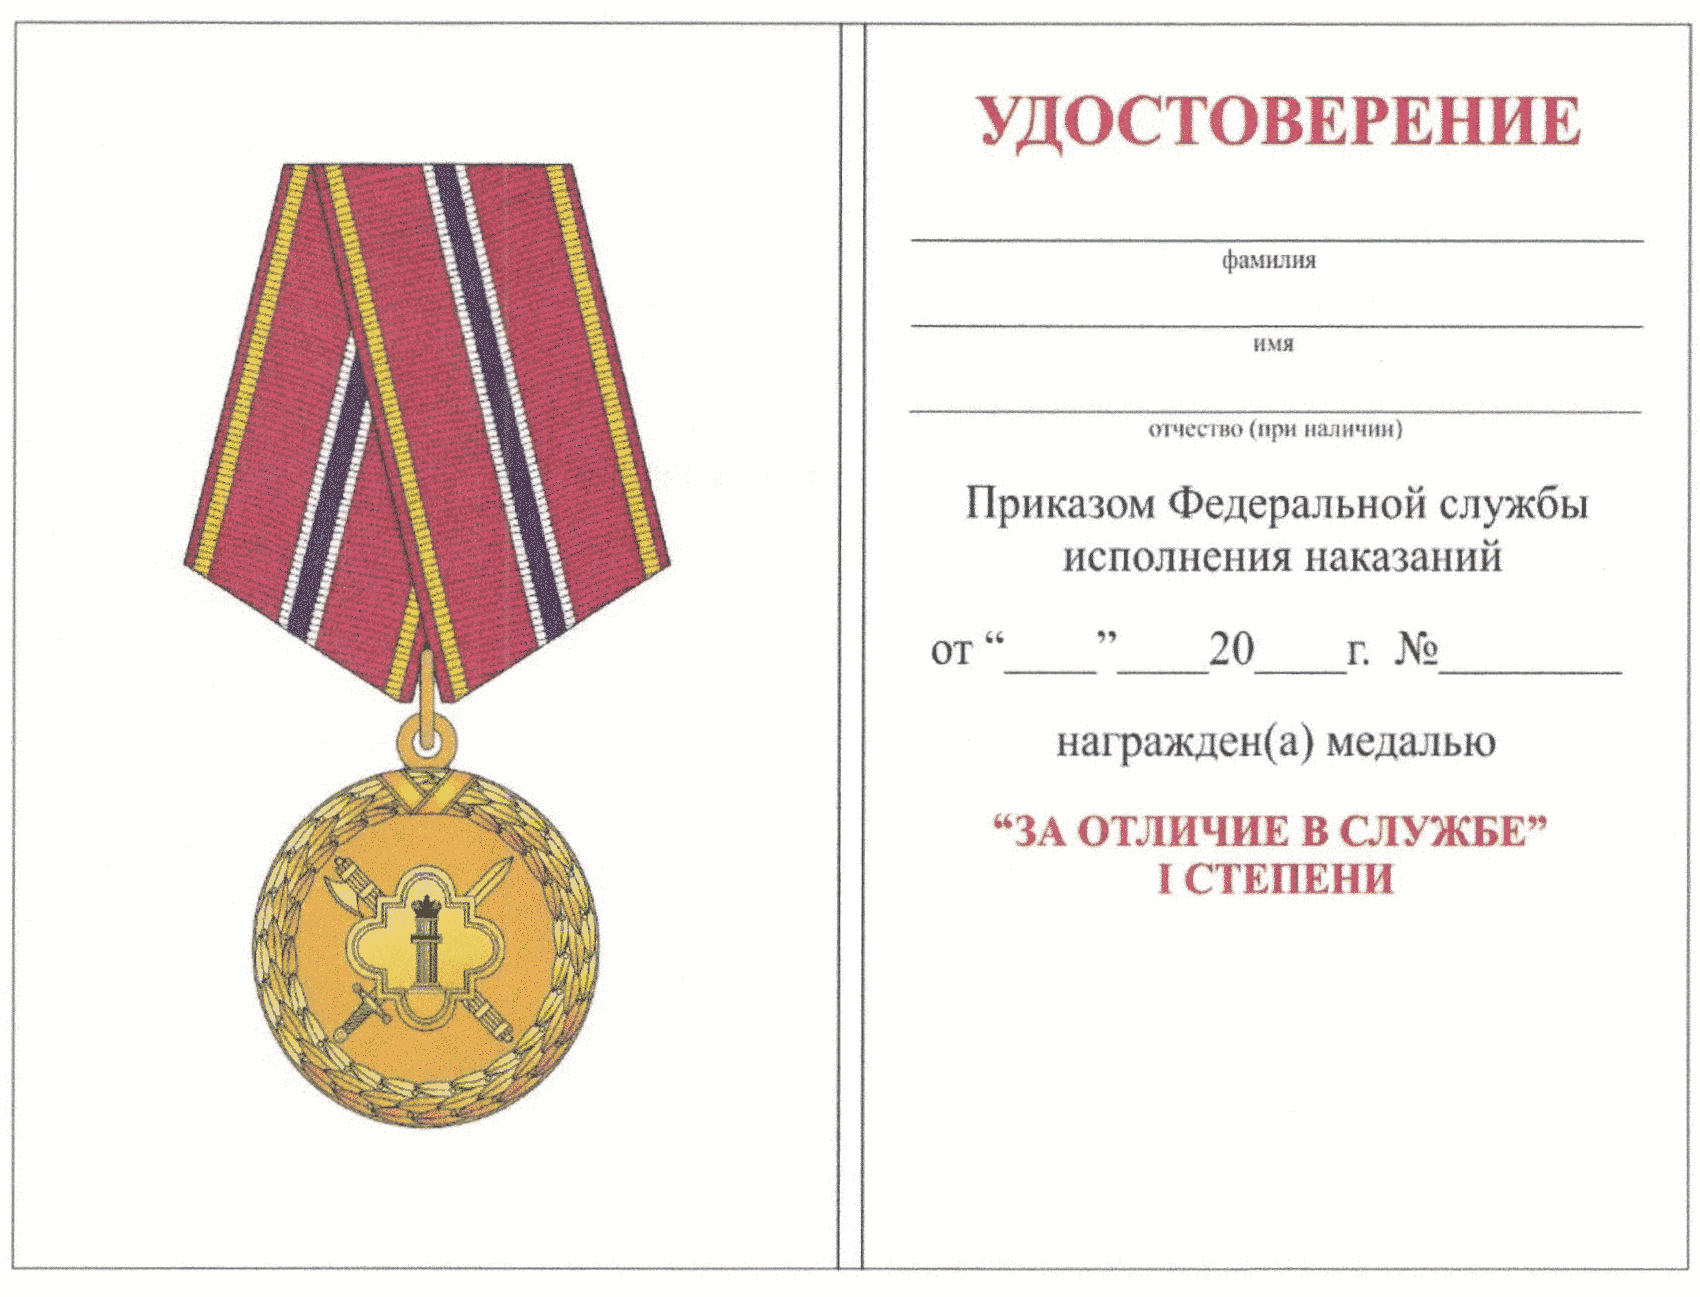 Награждение за службу. Медаль ФСИН 2 степени. Медаль за отличие в службе 1 степени ФСИН. Медаль за отличие в службе 2 степени ФСИН.